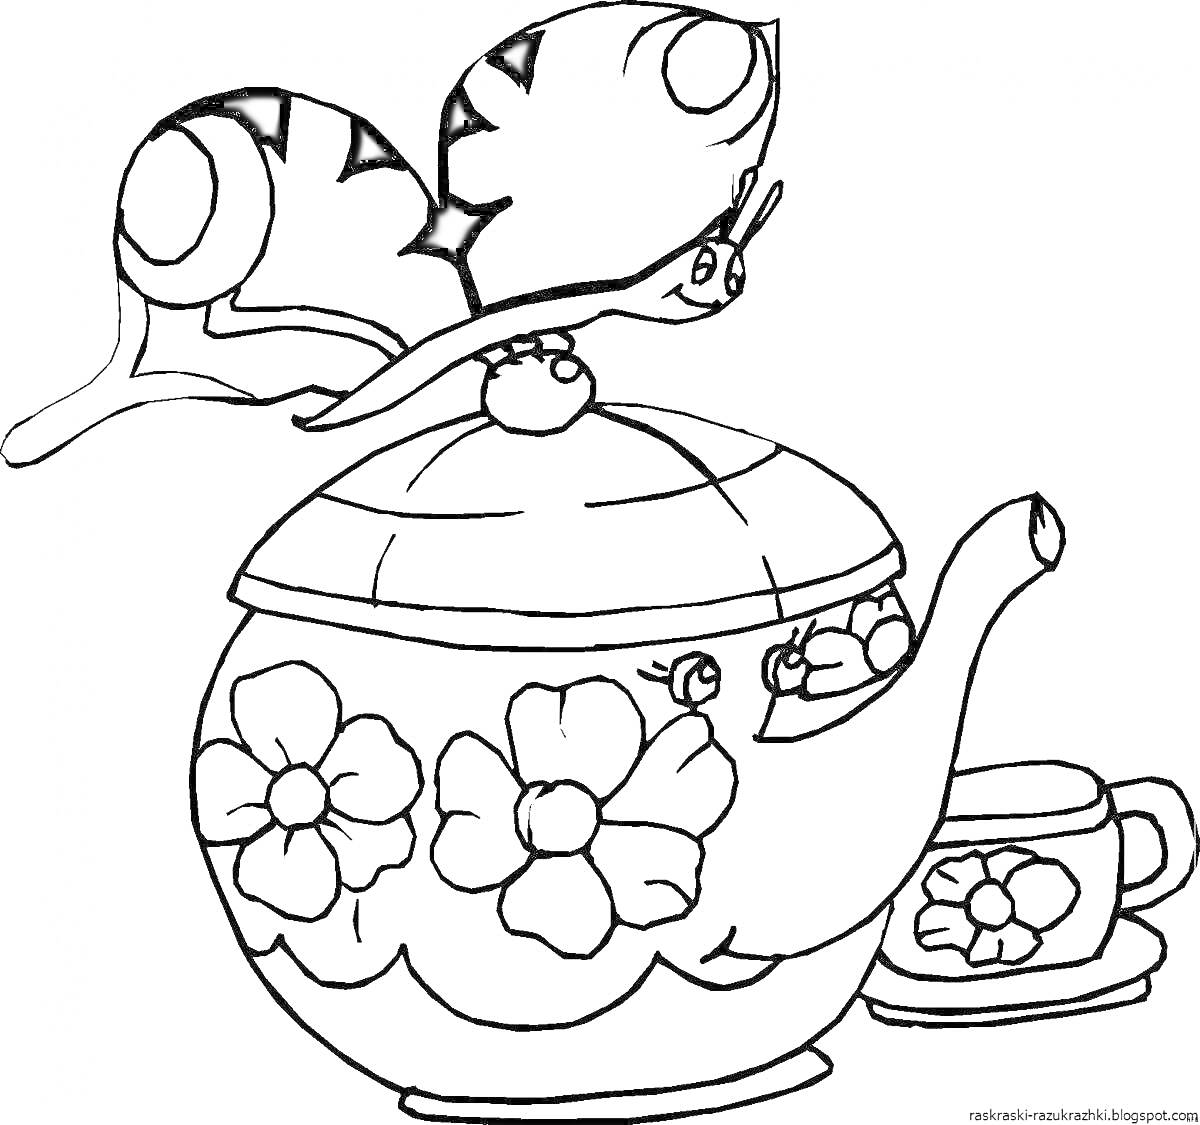 Раскраска Чайник с цветами, чашка и улитка на крышке